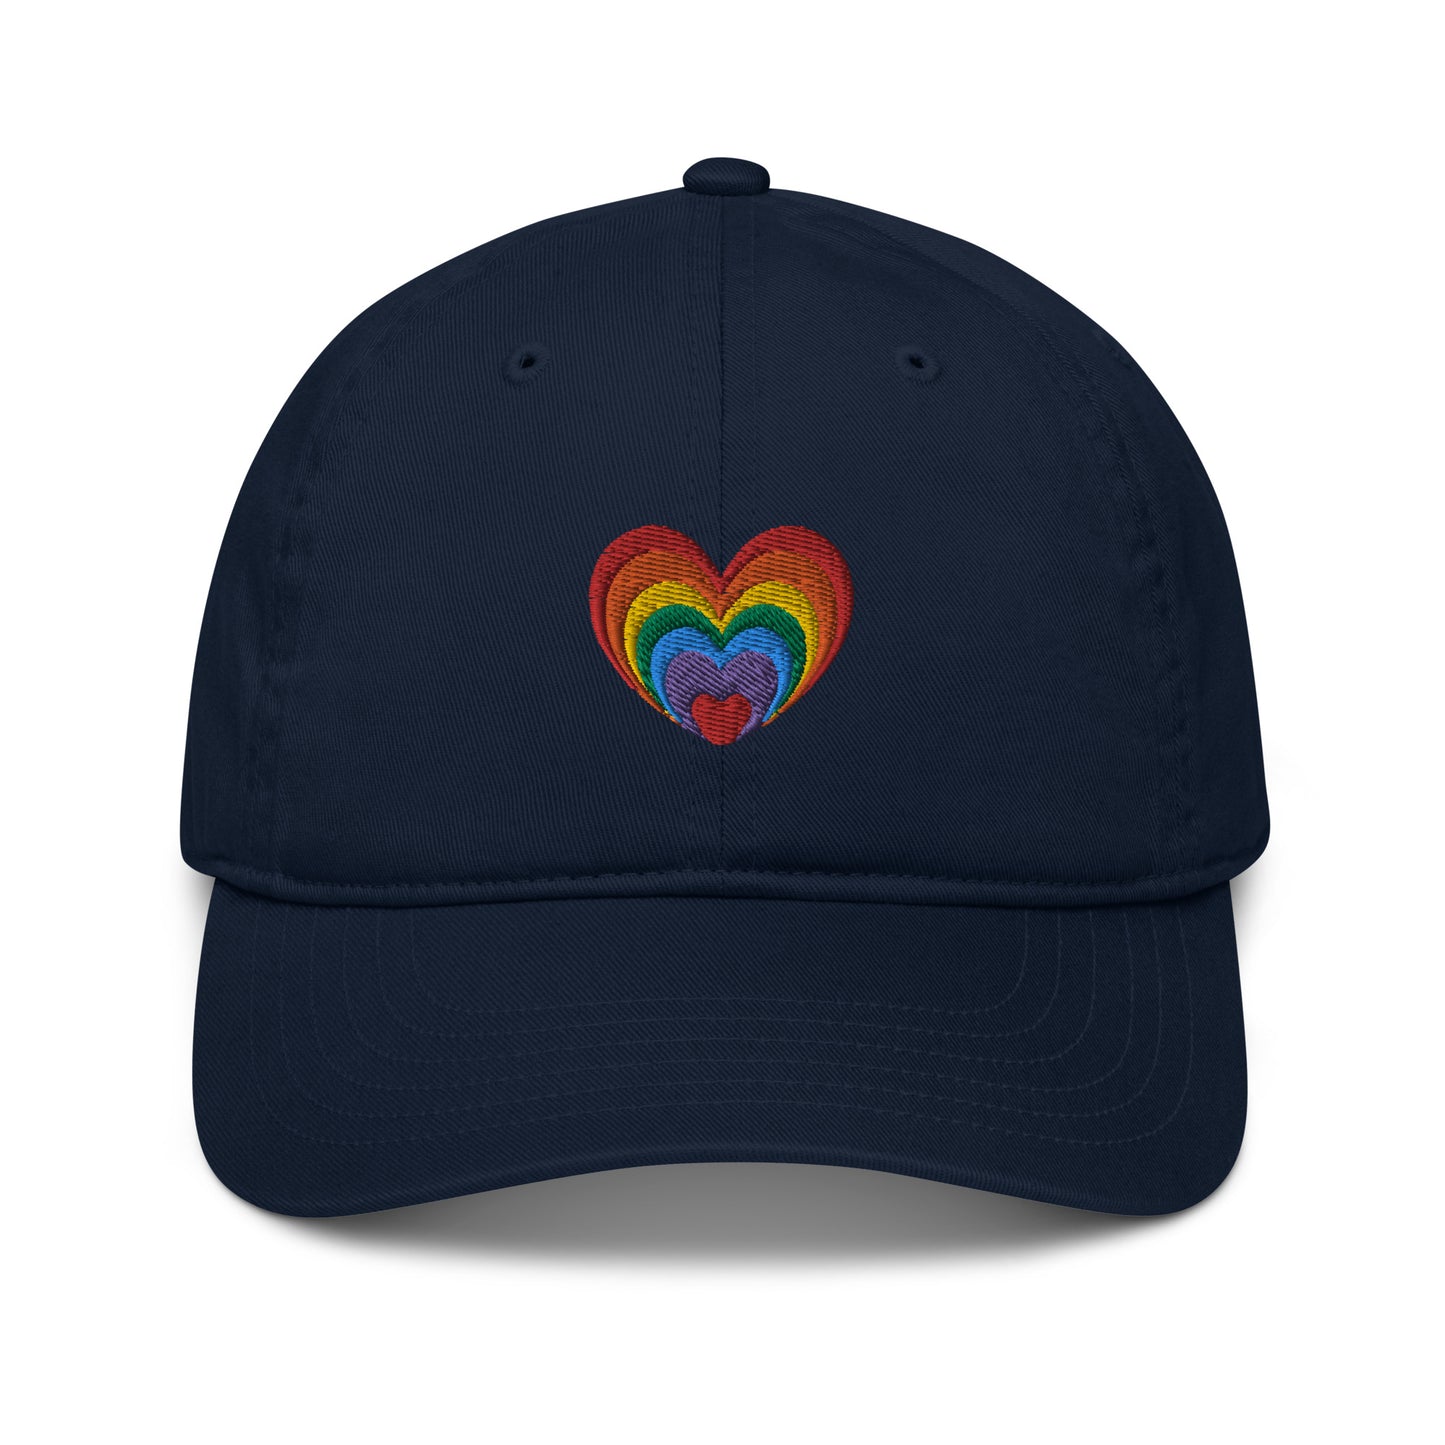 Organic Baseball Cap EC7000: Multi-Color Heart